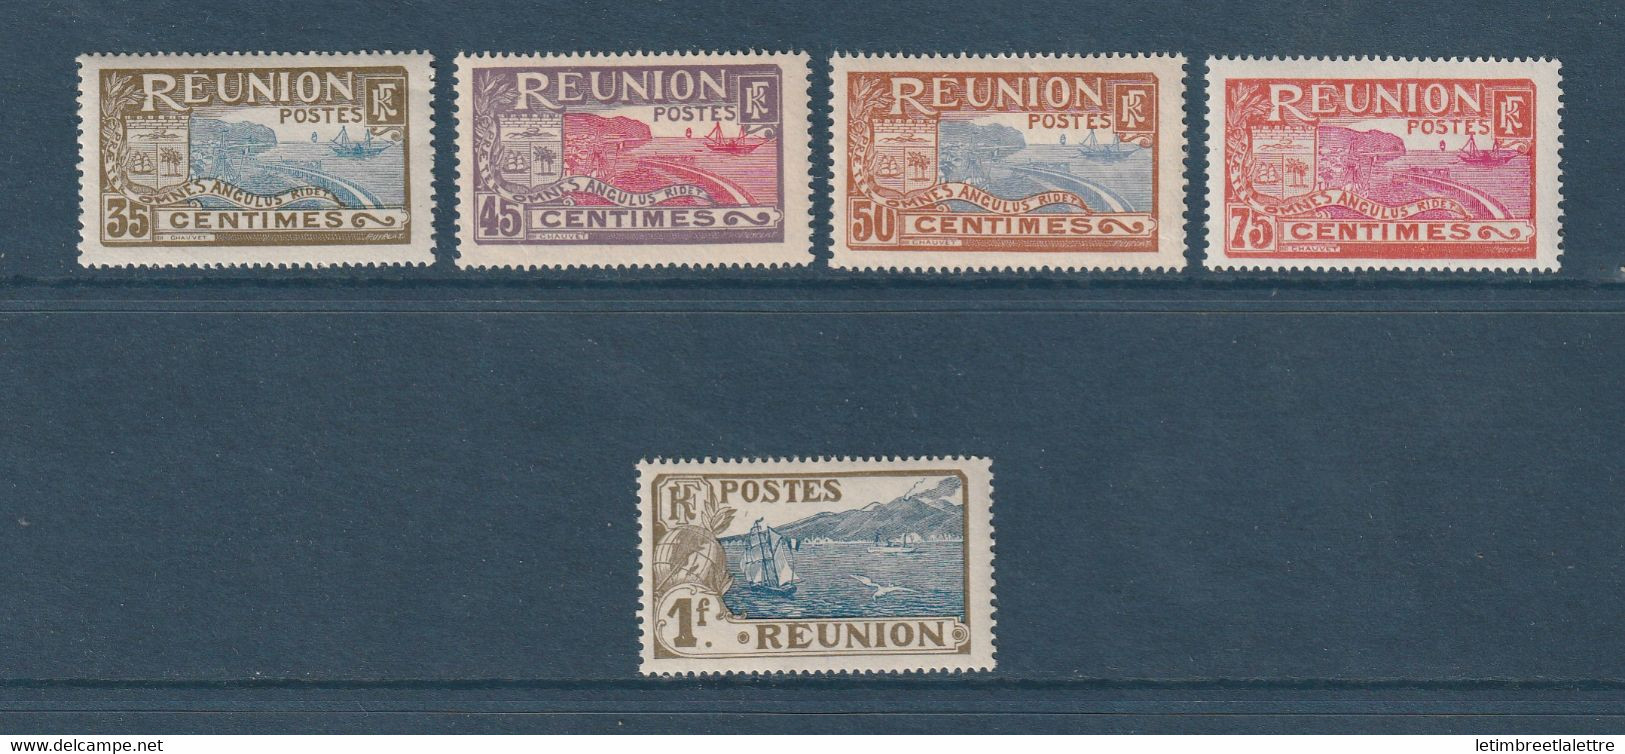 Réunion - YT N° 65 à 69 ** - Neuf Sans Charnière - 1907 1917 - Unused Stamps